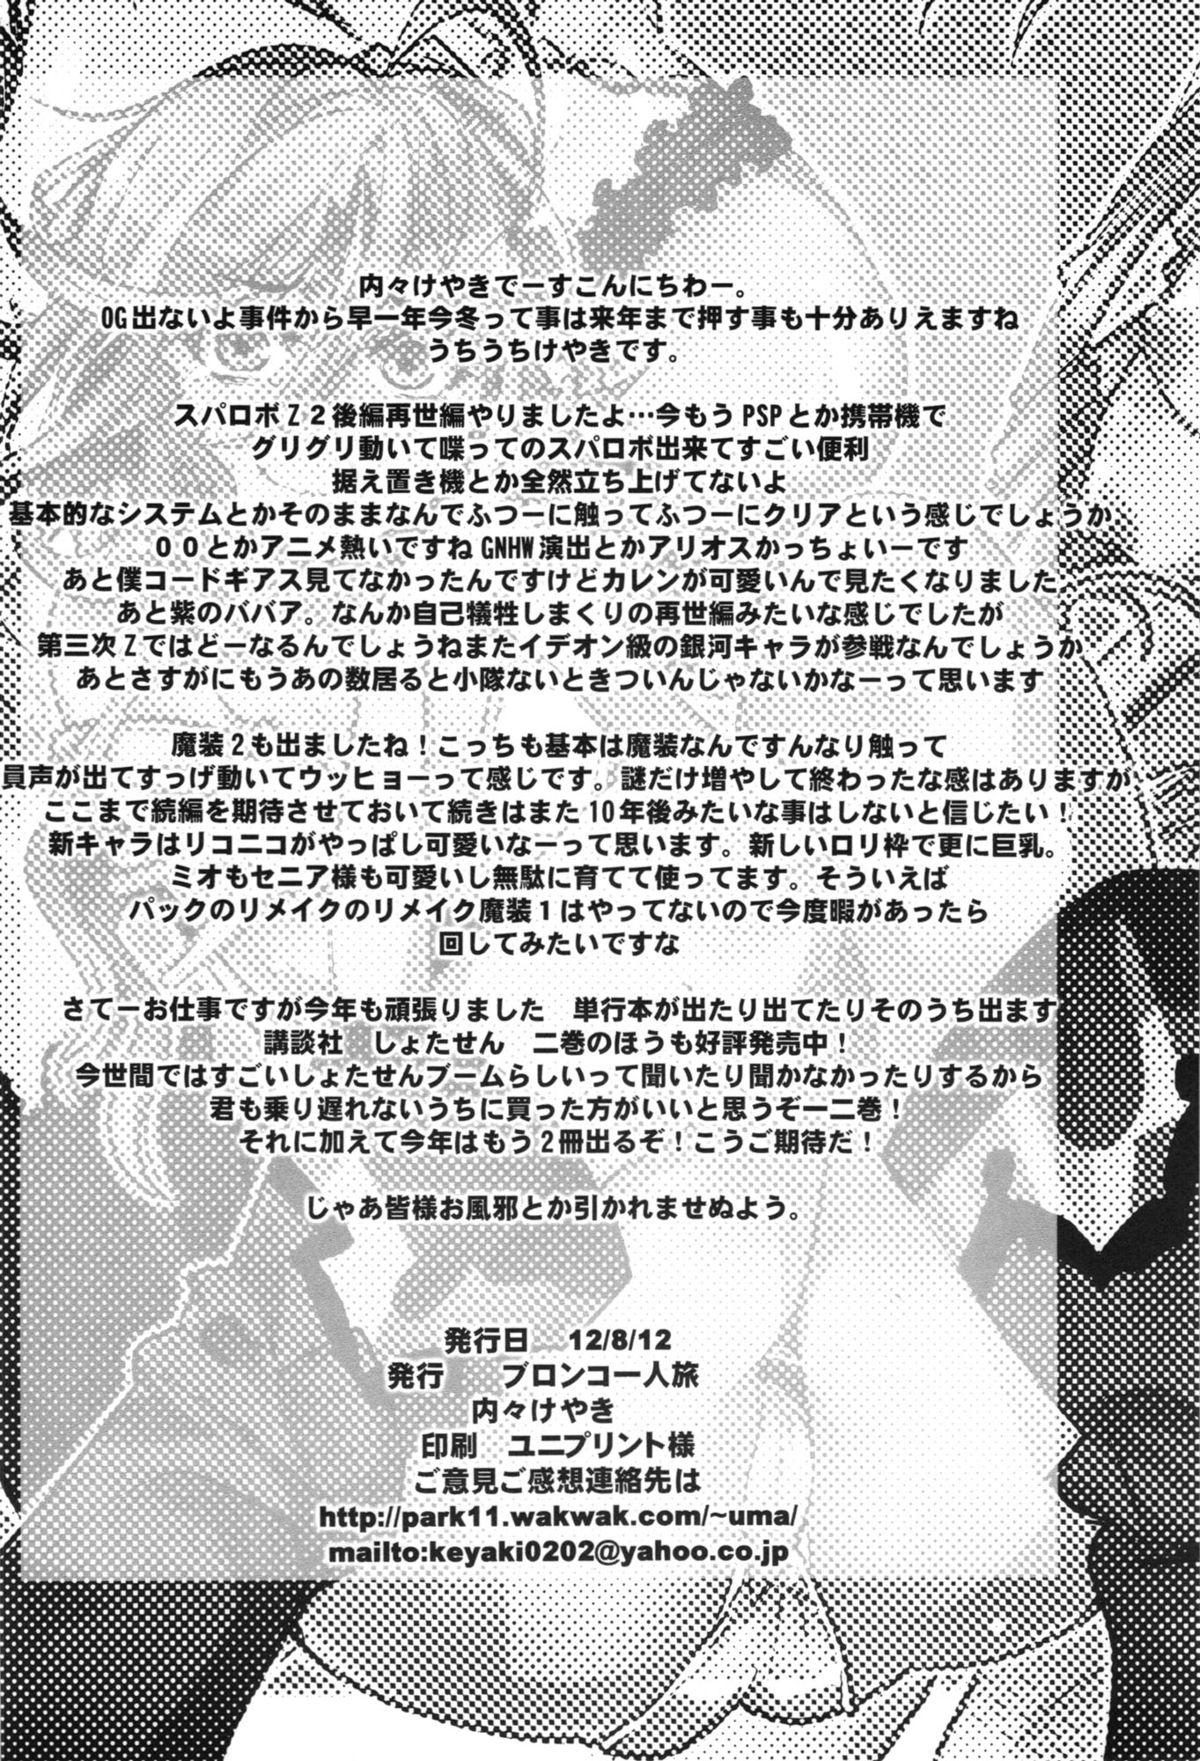 Lez Dainiji Boku no Watashi no Super Bobobbo Taisen ZZ - Cio Mar Mari 3 Oppai Kessen hen - Super robot wars Vaginal - Page 70